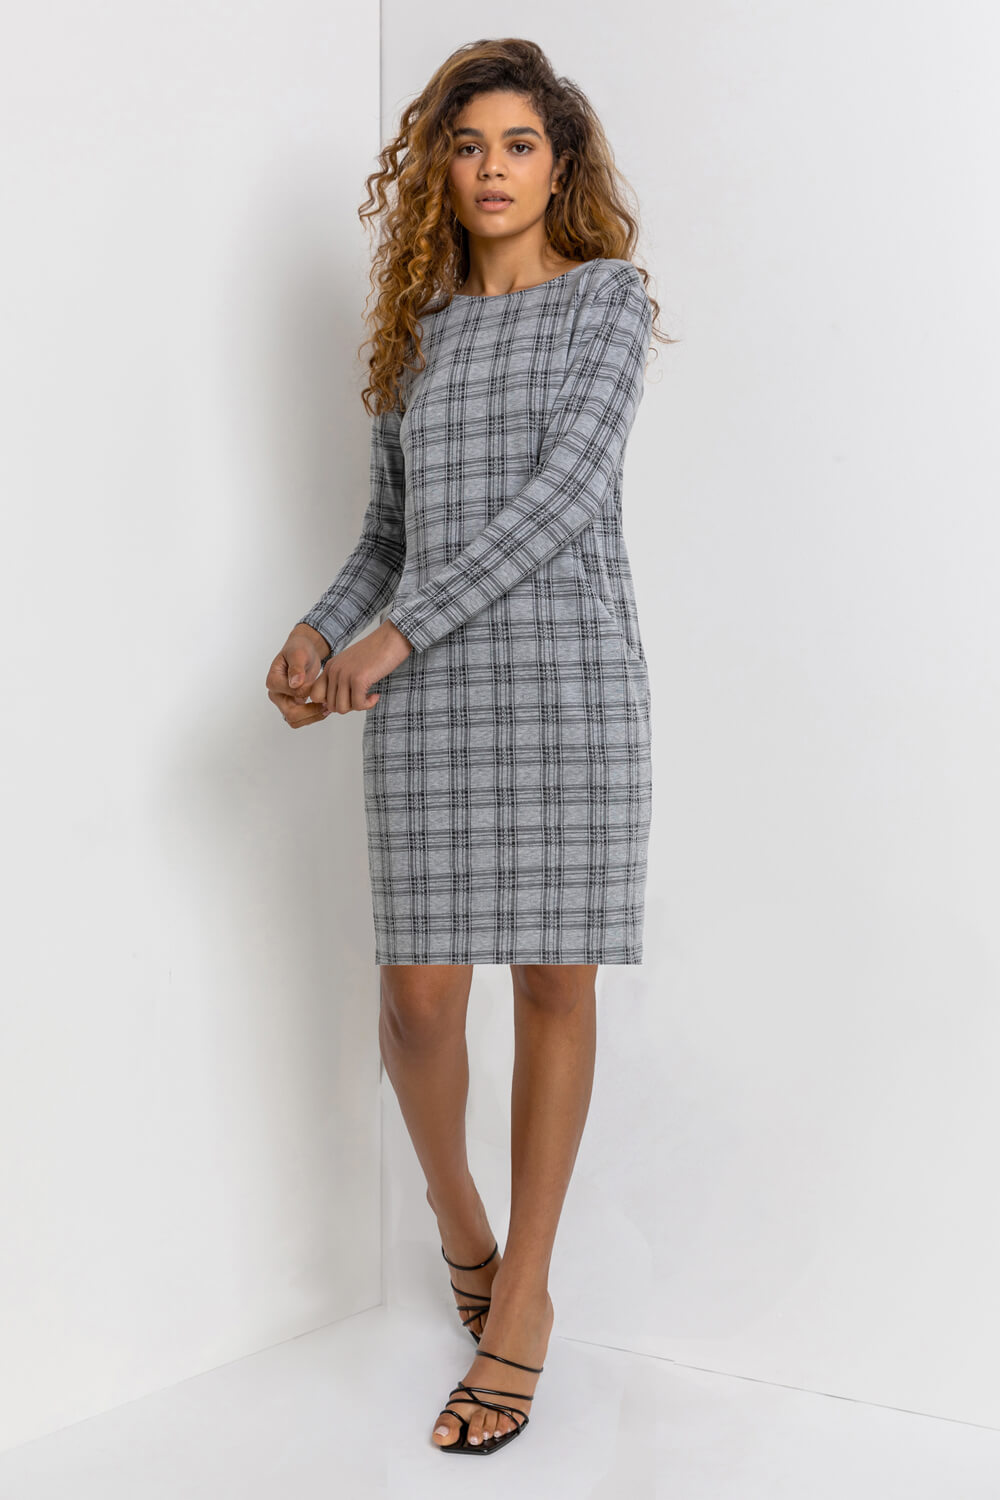 Grey Check Print Pocket Shift Dress, Image 5 of 5